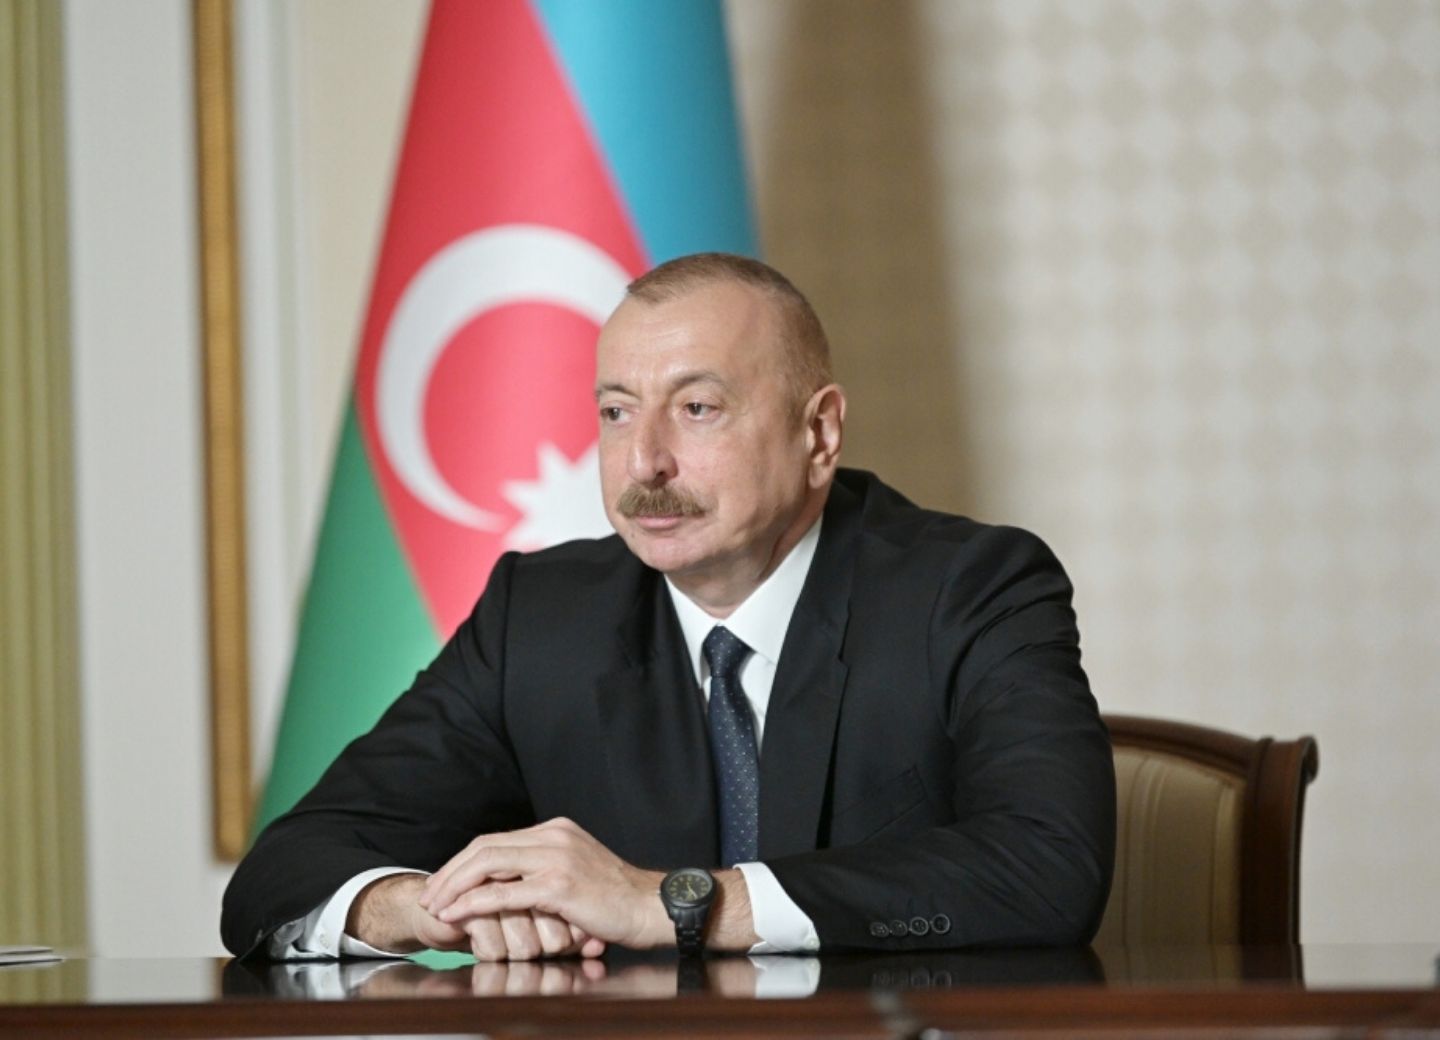 Ильхам Алиев: Азербайджан превратился в один из новых важных транспортно-логистических центров Евразии 